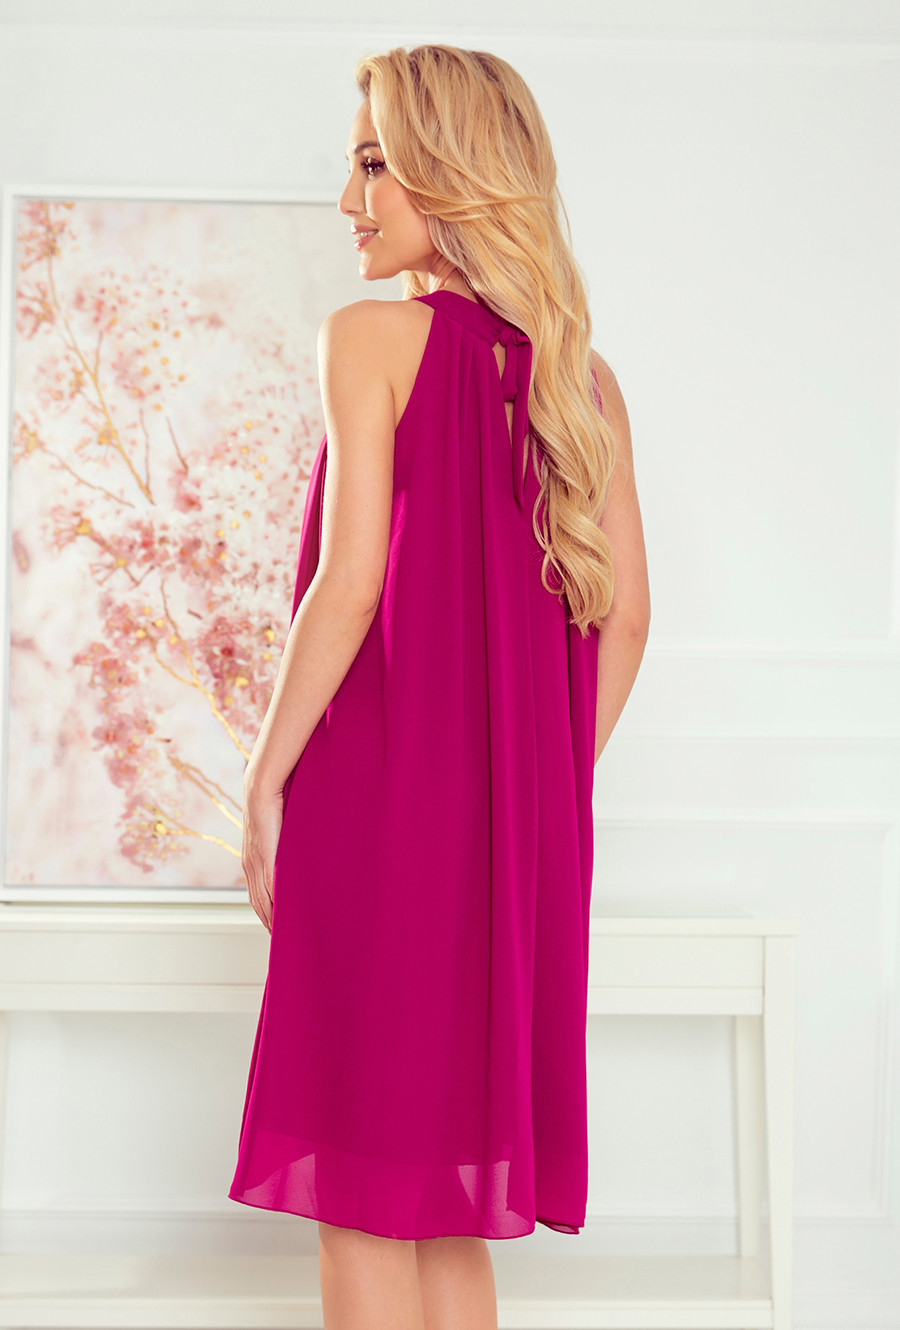 ALIZEE - Dámské šifonové šaty ve fuchsiové barvě se zavazováním 350-7 S